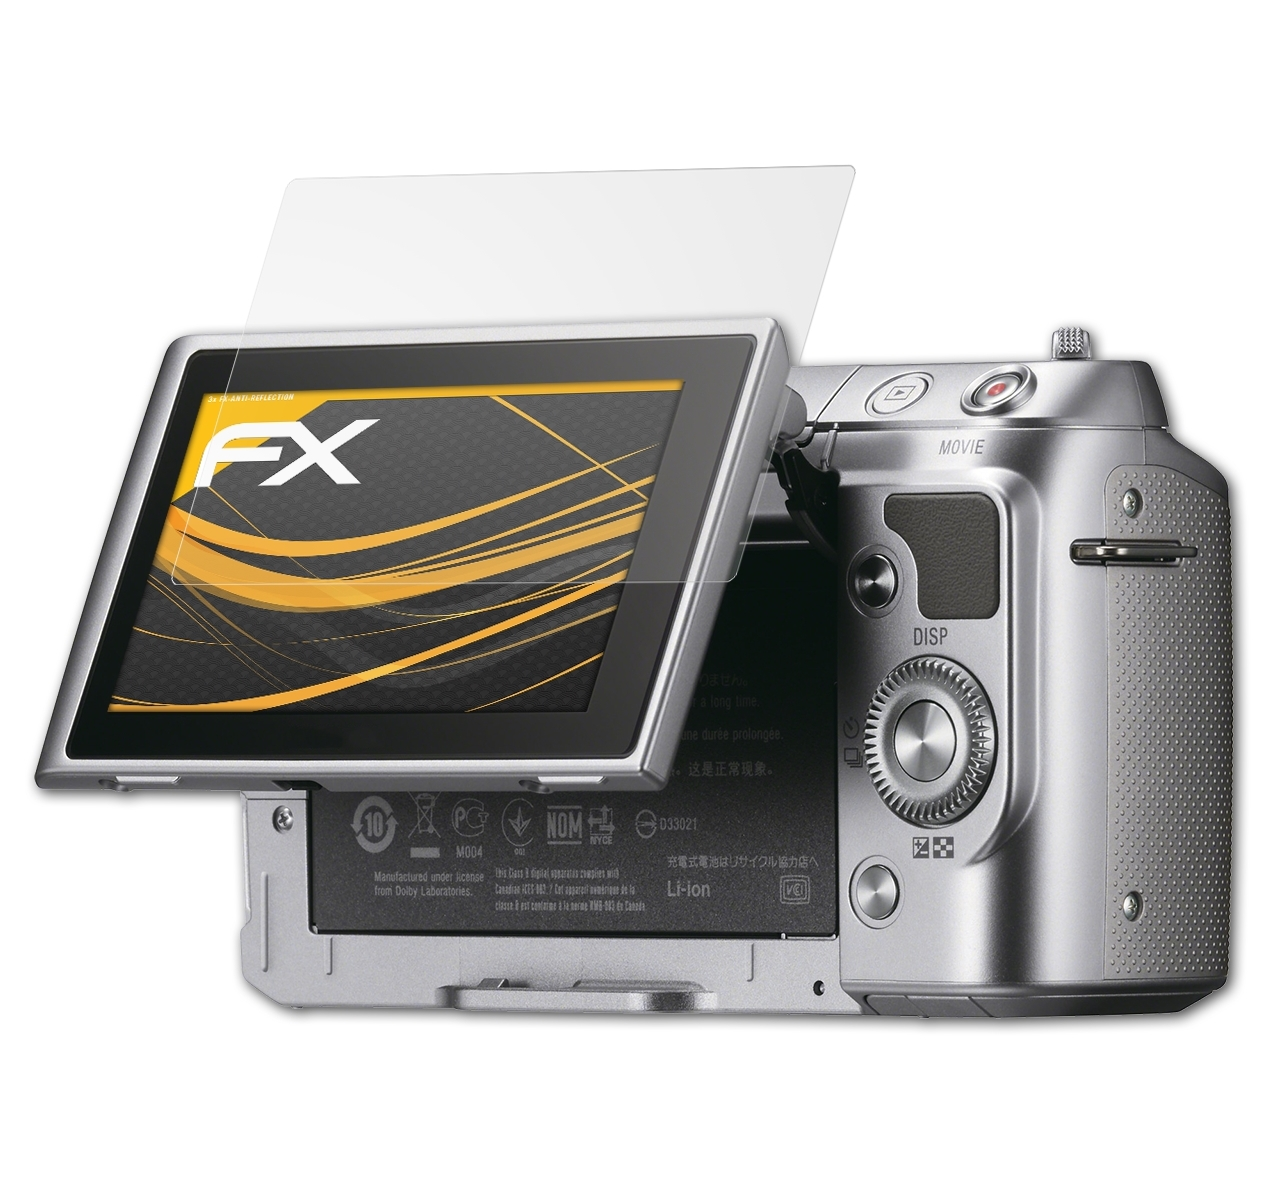 ATFOLIX 3x FX-Antireflex Displayschutz(für Sony NEX-F3)